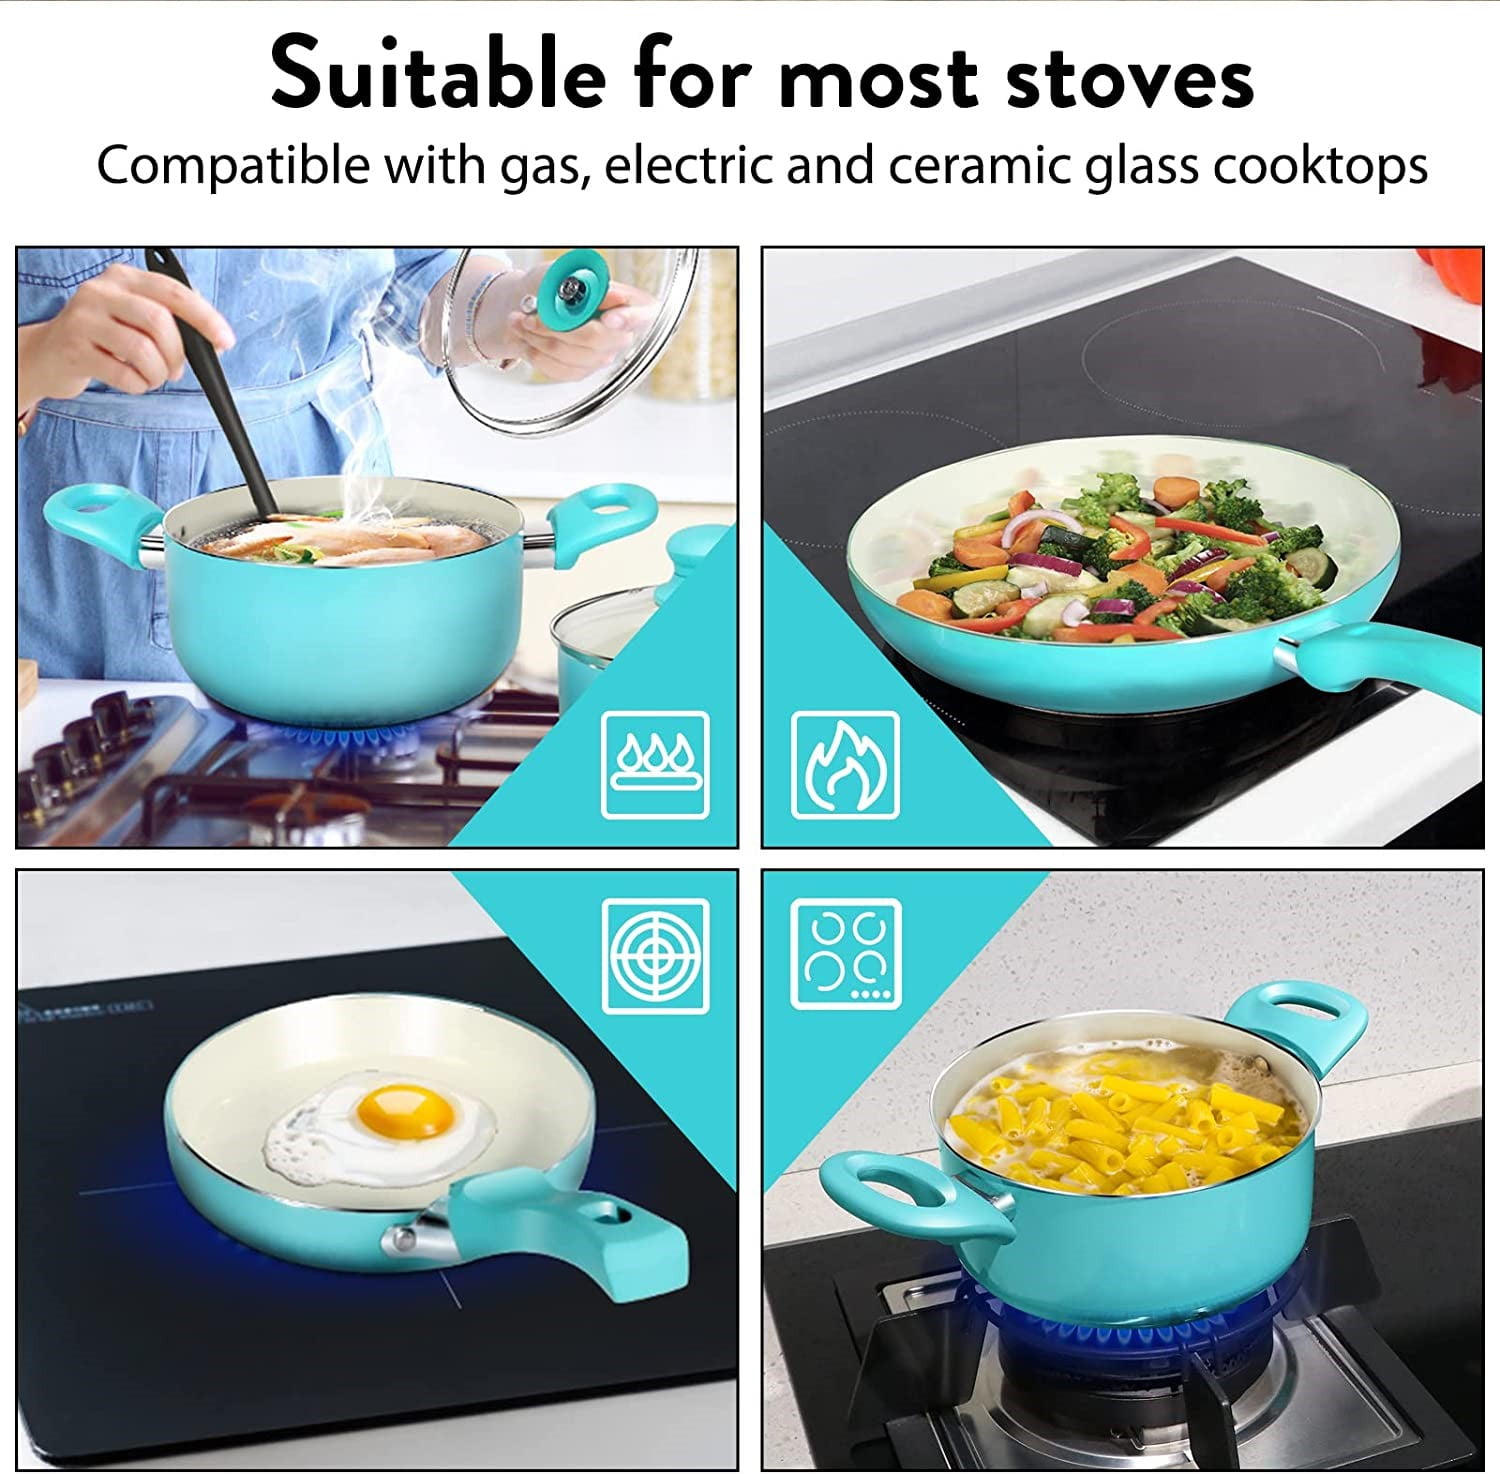 Dropship Kitchen Cookware Sets Nonstick Ceramic Bule,1.2 Quart Pot